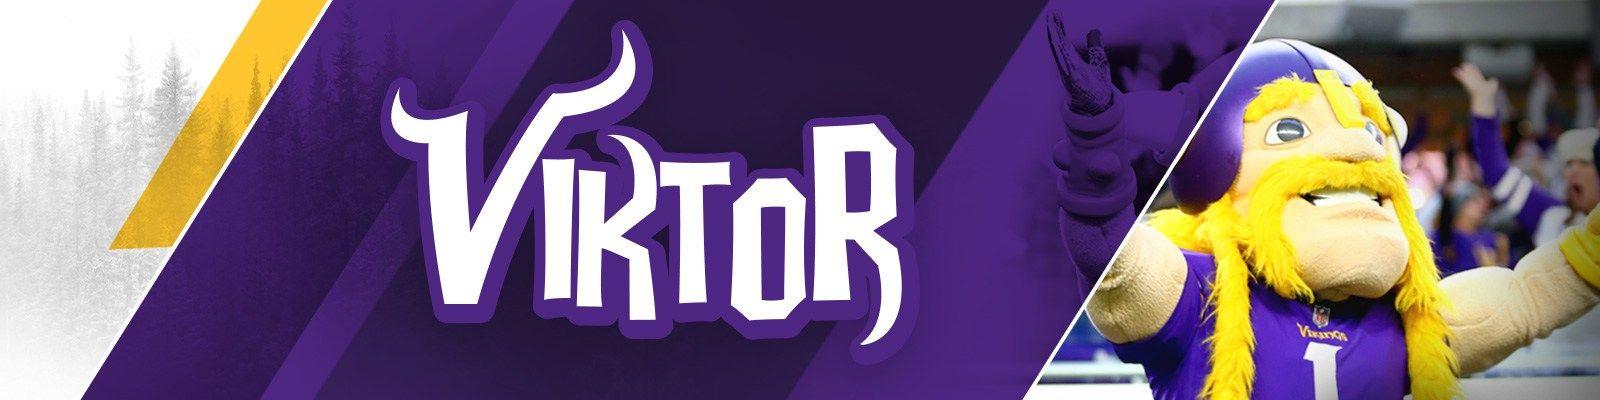 Purple Viking Logo - Viktor the Viking Bio | Minnesota Vikings – vikings.com